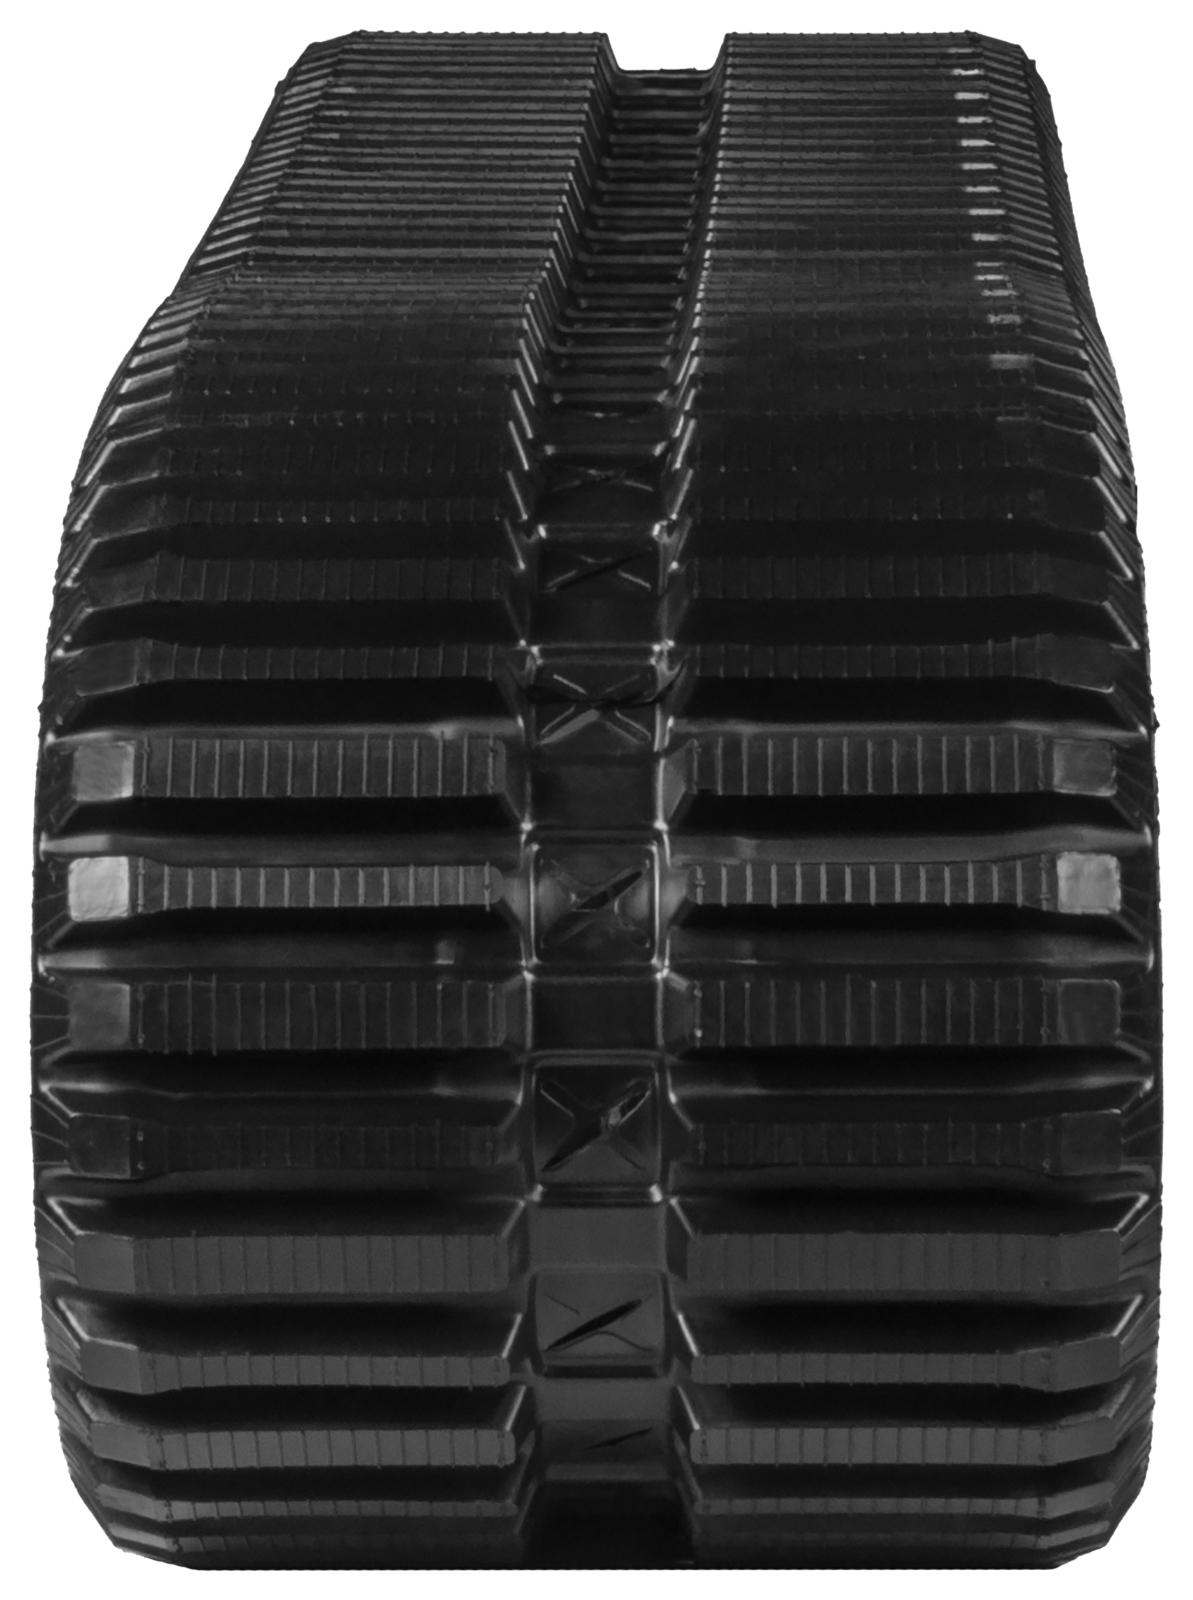 set of 2 16" heavy duty multi-bar pattern rubber track (400x86bx49)